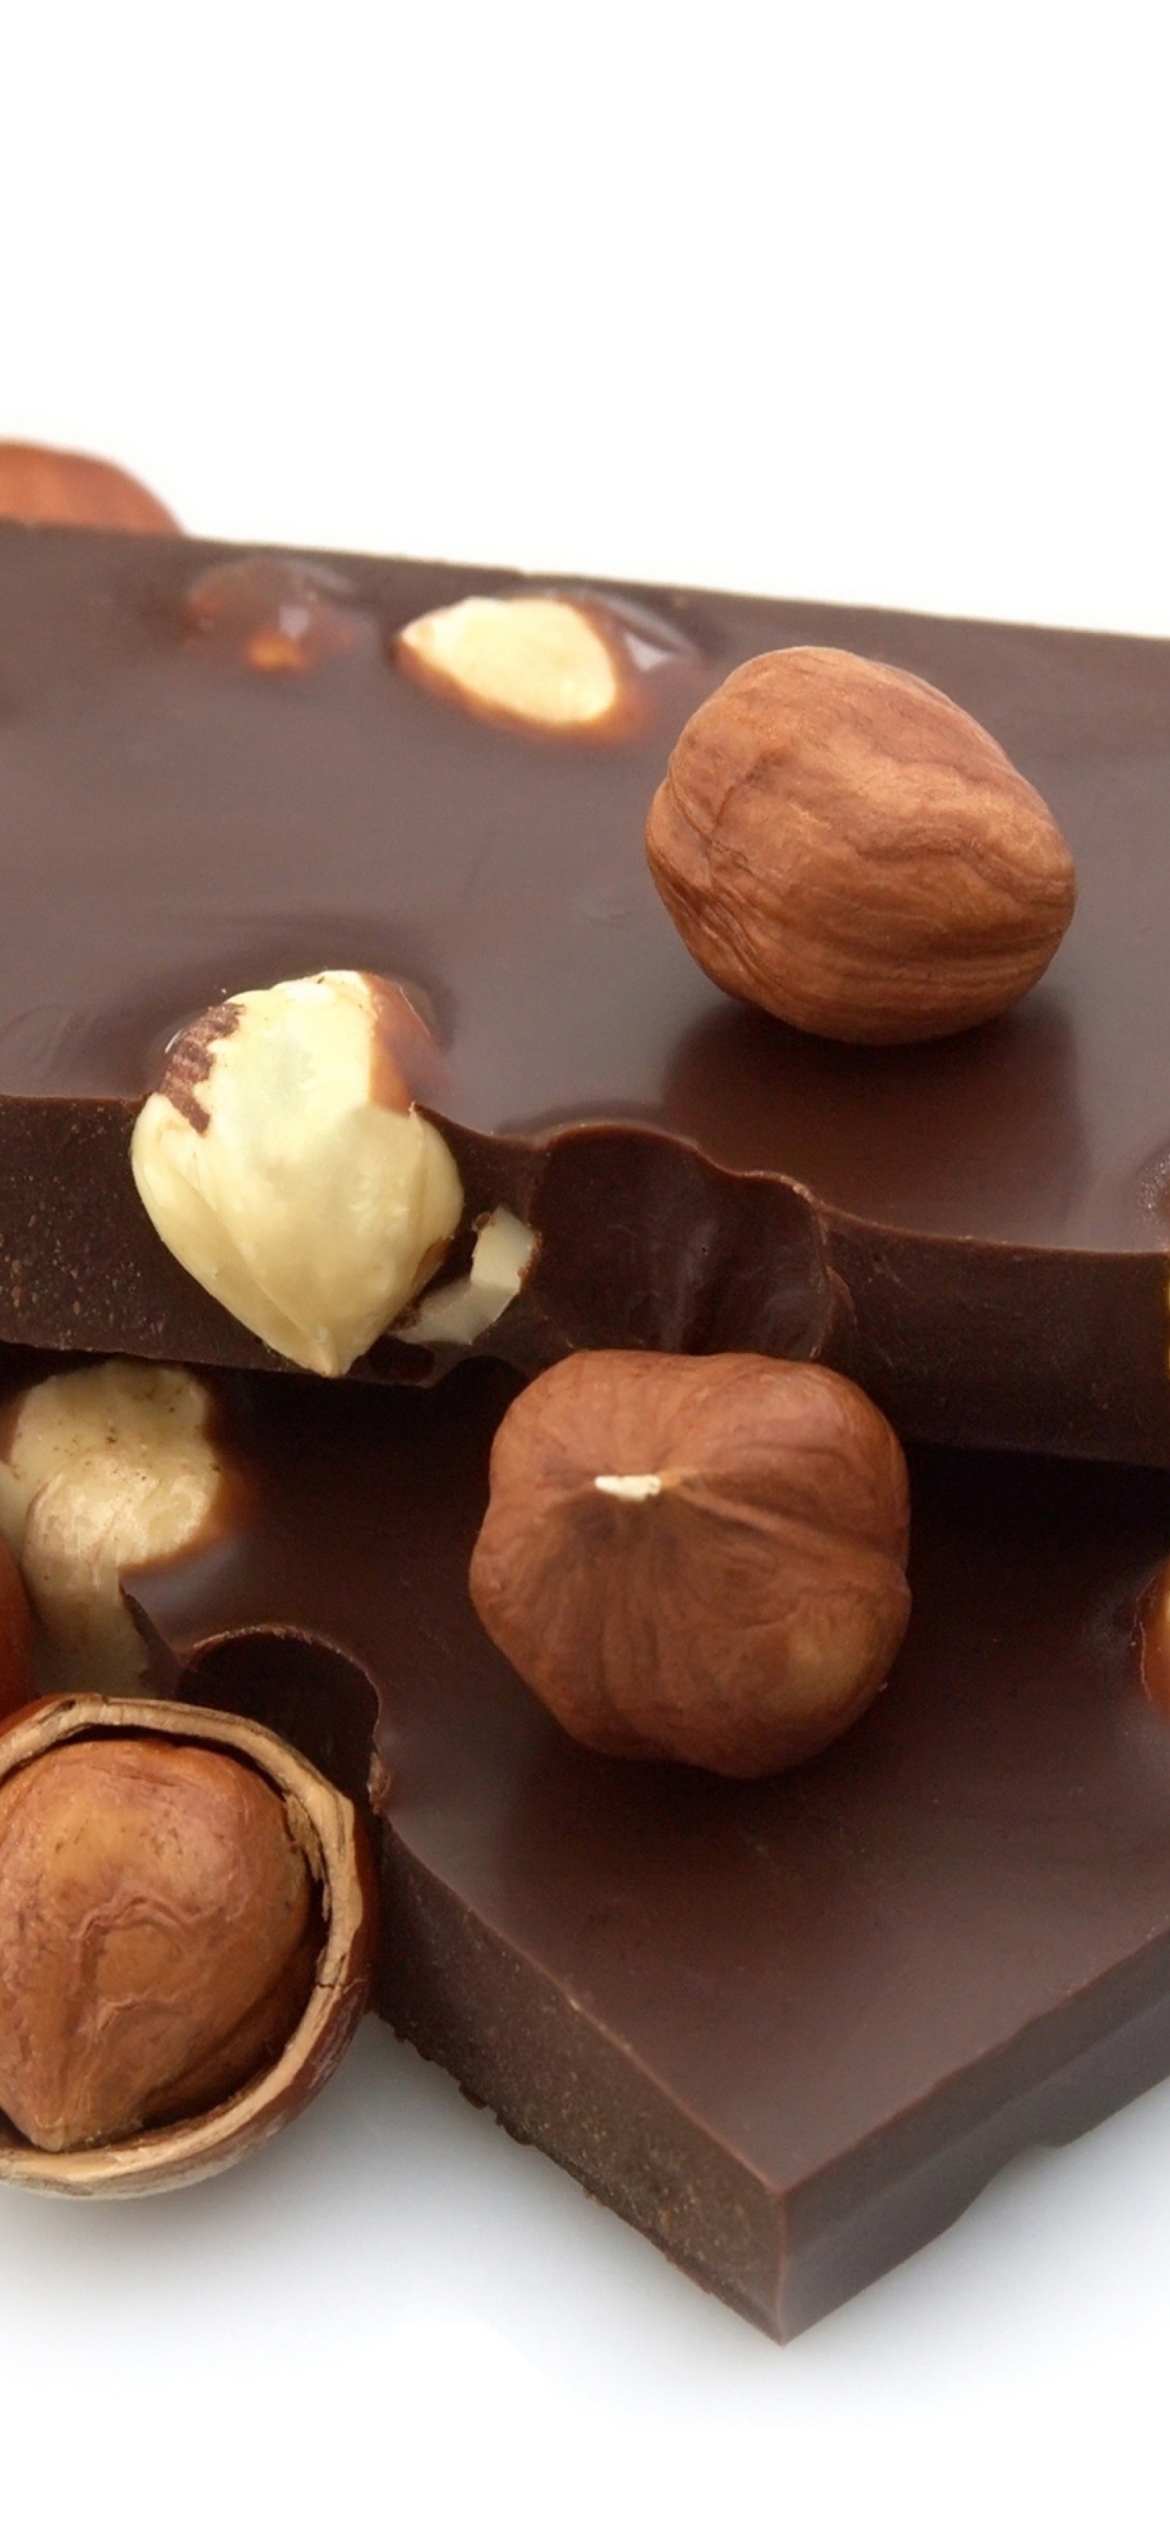 Das Chocolate With Hazelnuts Wallpaper 1170x2532